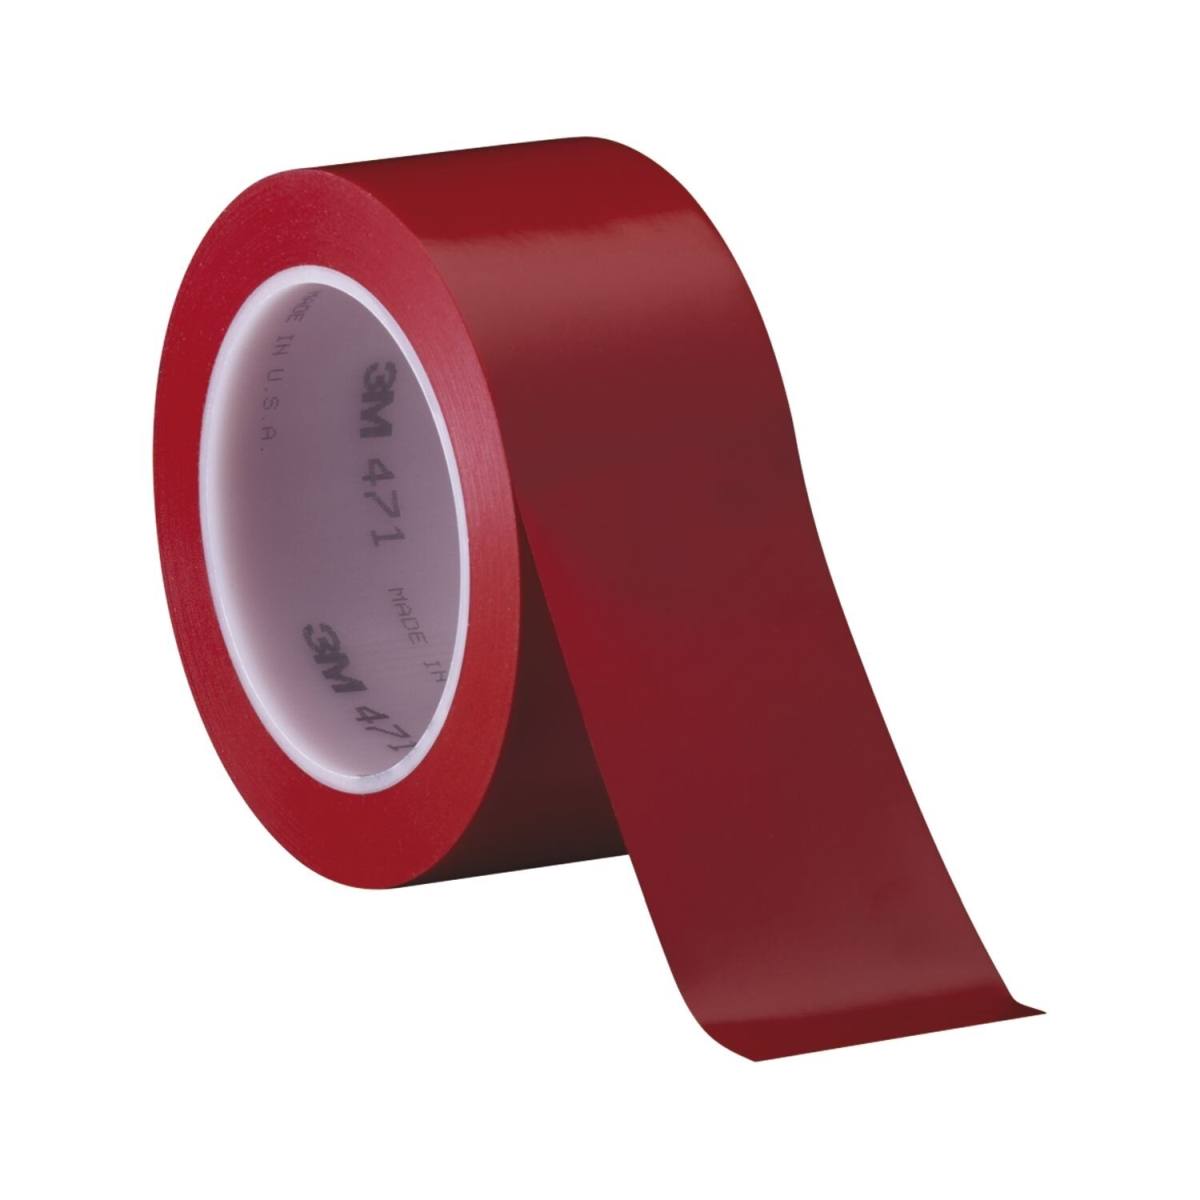 3M ruban adhésif en PVC souple 471 F, rouge, 50 mm x 33 m, 0,13 mm, emballage individuel pratique